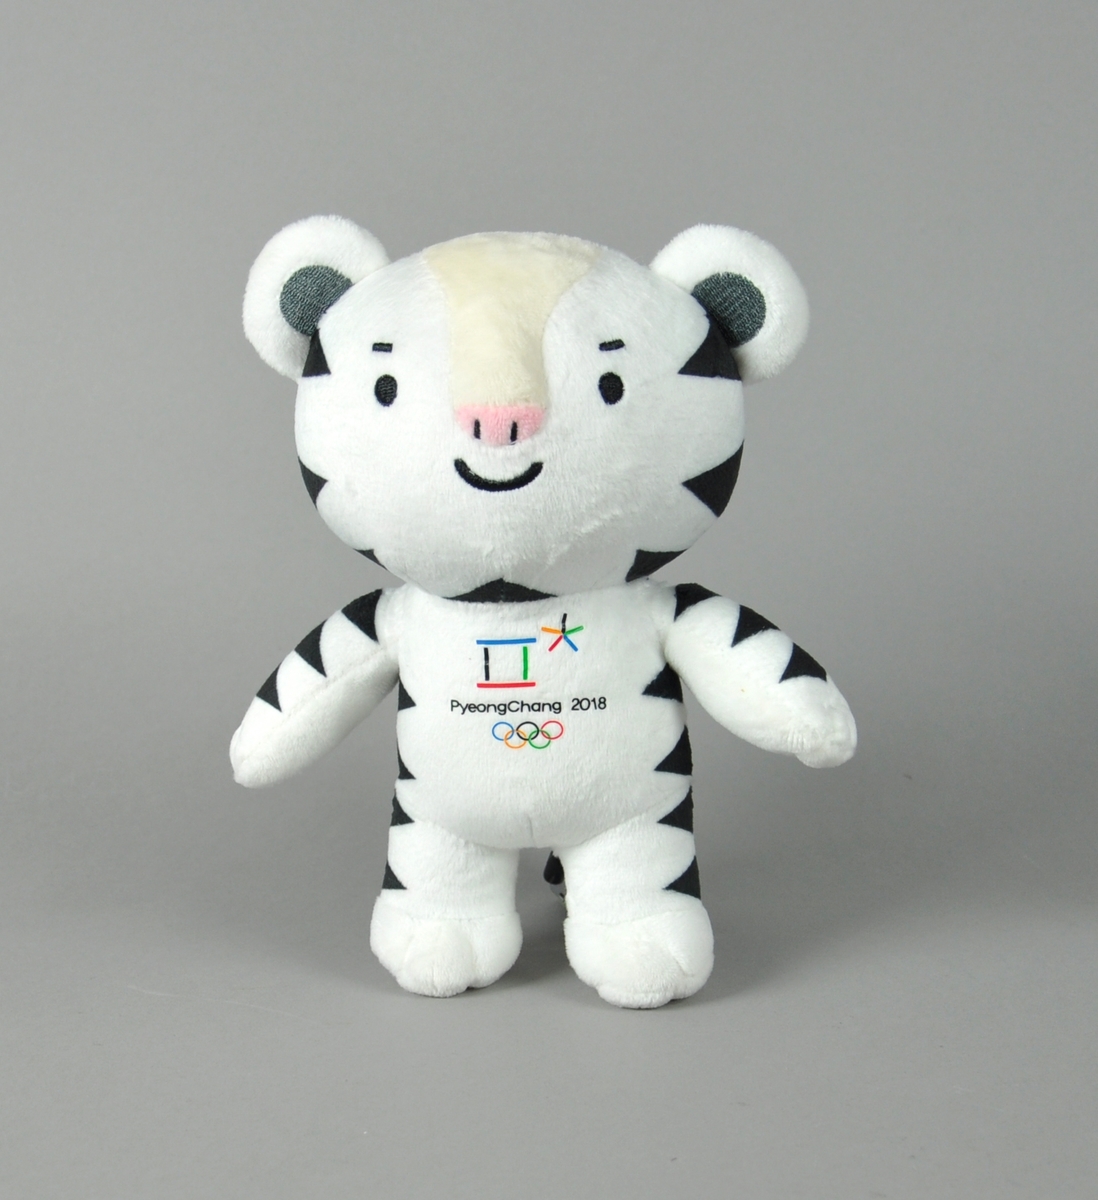 Hvit bamse med svarte flekker. På brystet vises logo for vinter-OL i PyeongChang 2018 med de olympiske ringene under.